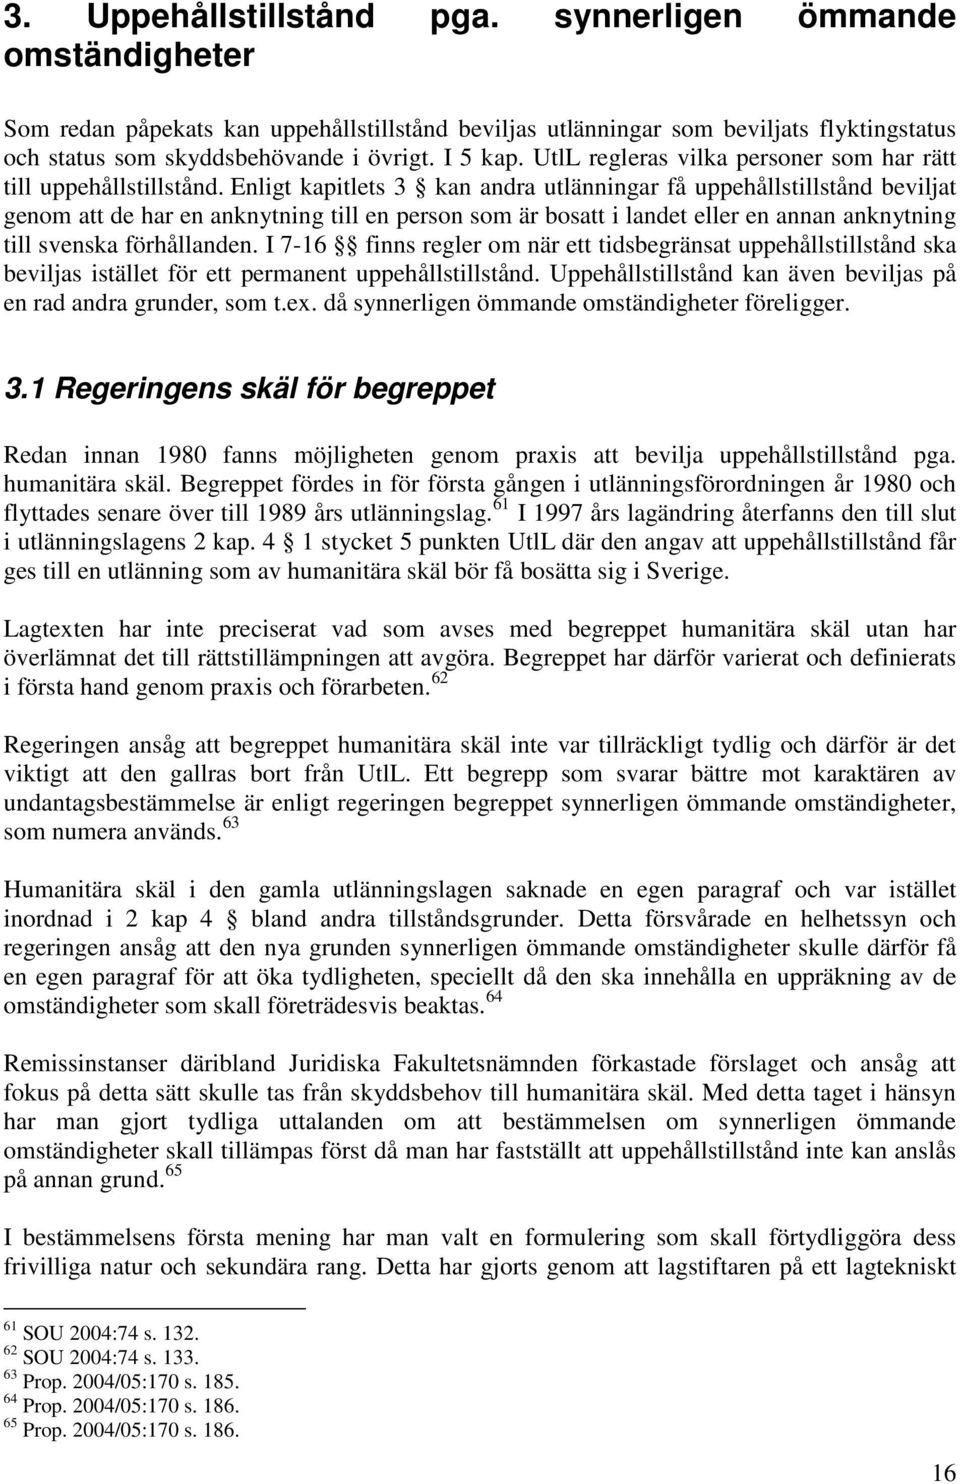 Enligt kapitlets 3 kan andra utlänningar få uppehållstillstånd beviljat genom att de har en anknytning till en person som är bosatt i landet eller en annan anknytning till svenska förhållanden.